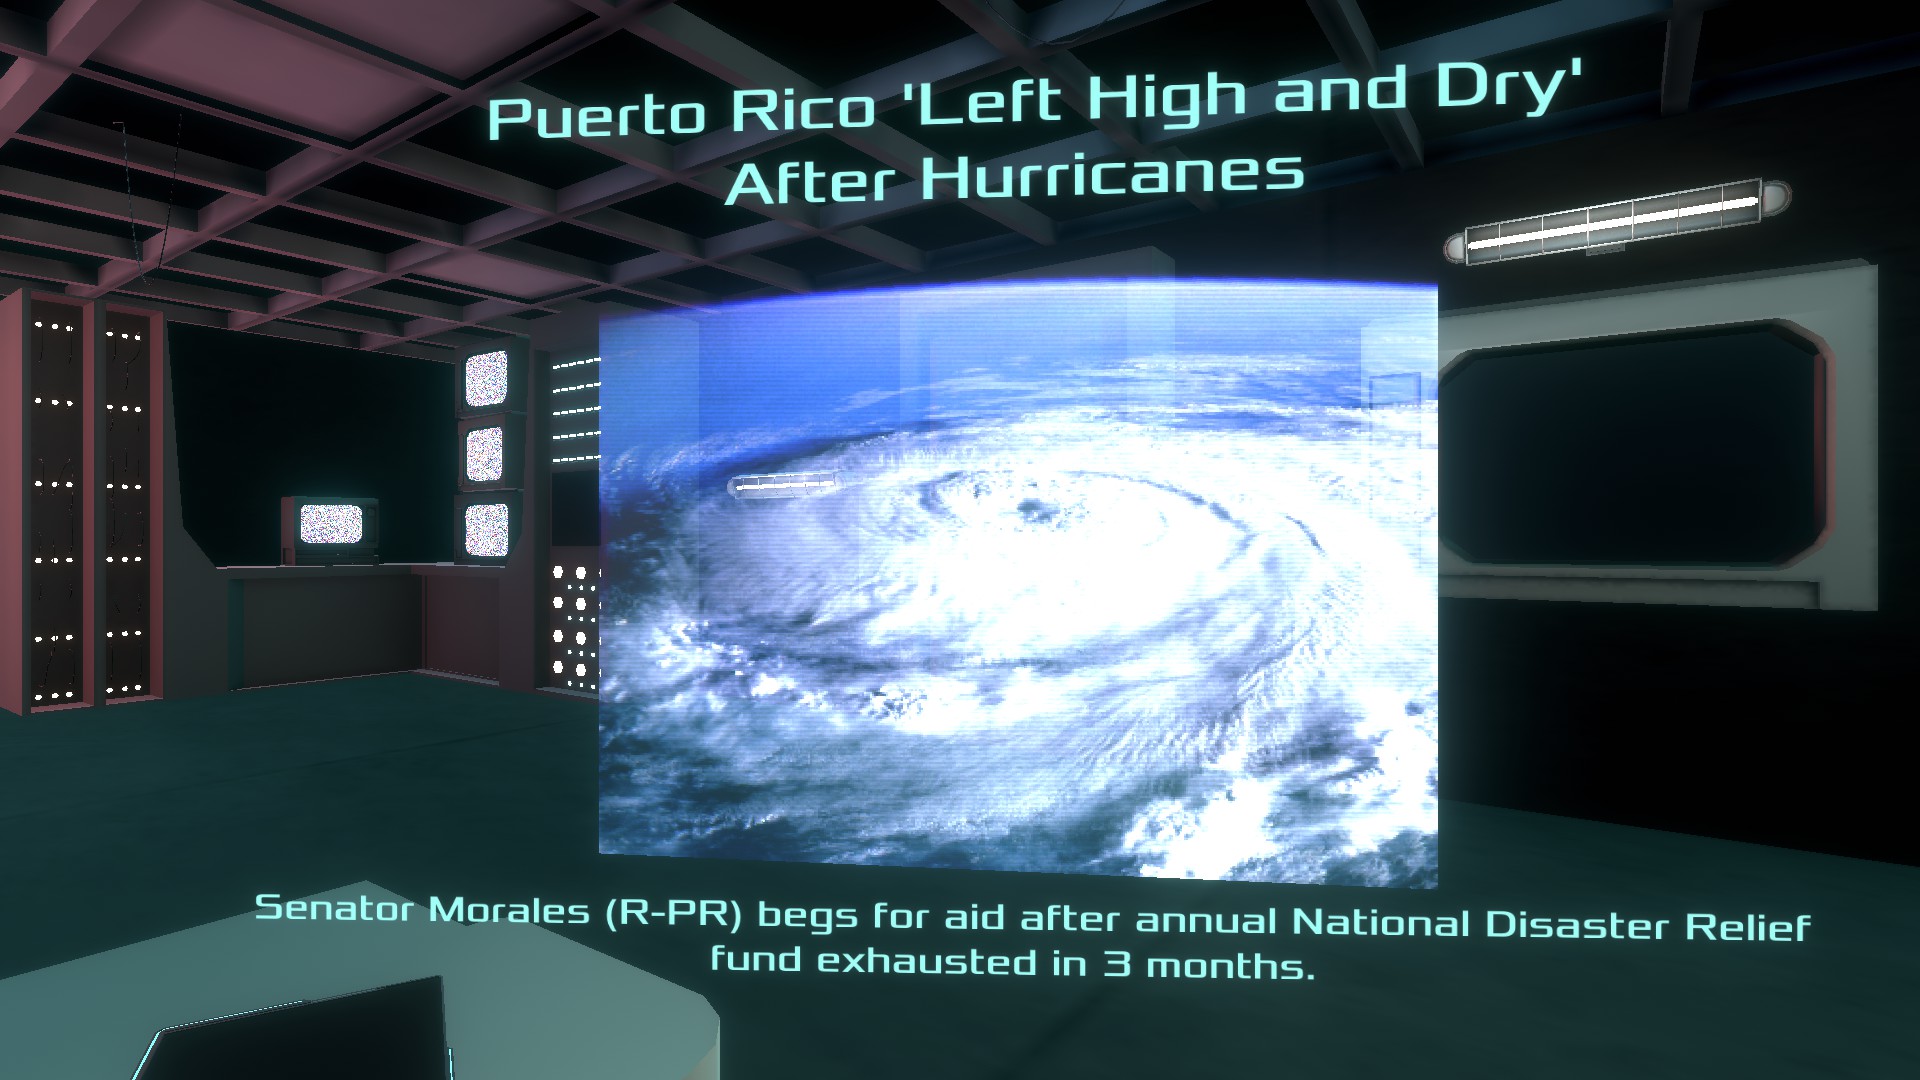 Référence aux ouragans qui ont touché Porto Rico